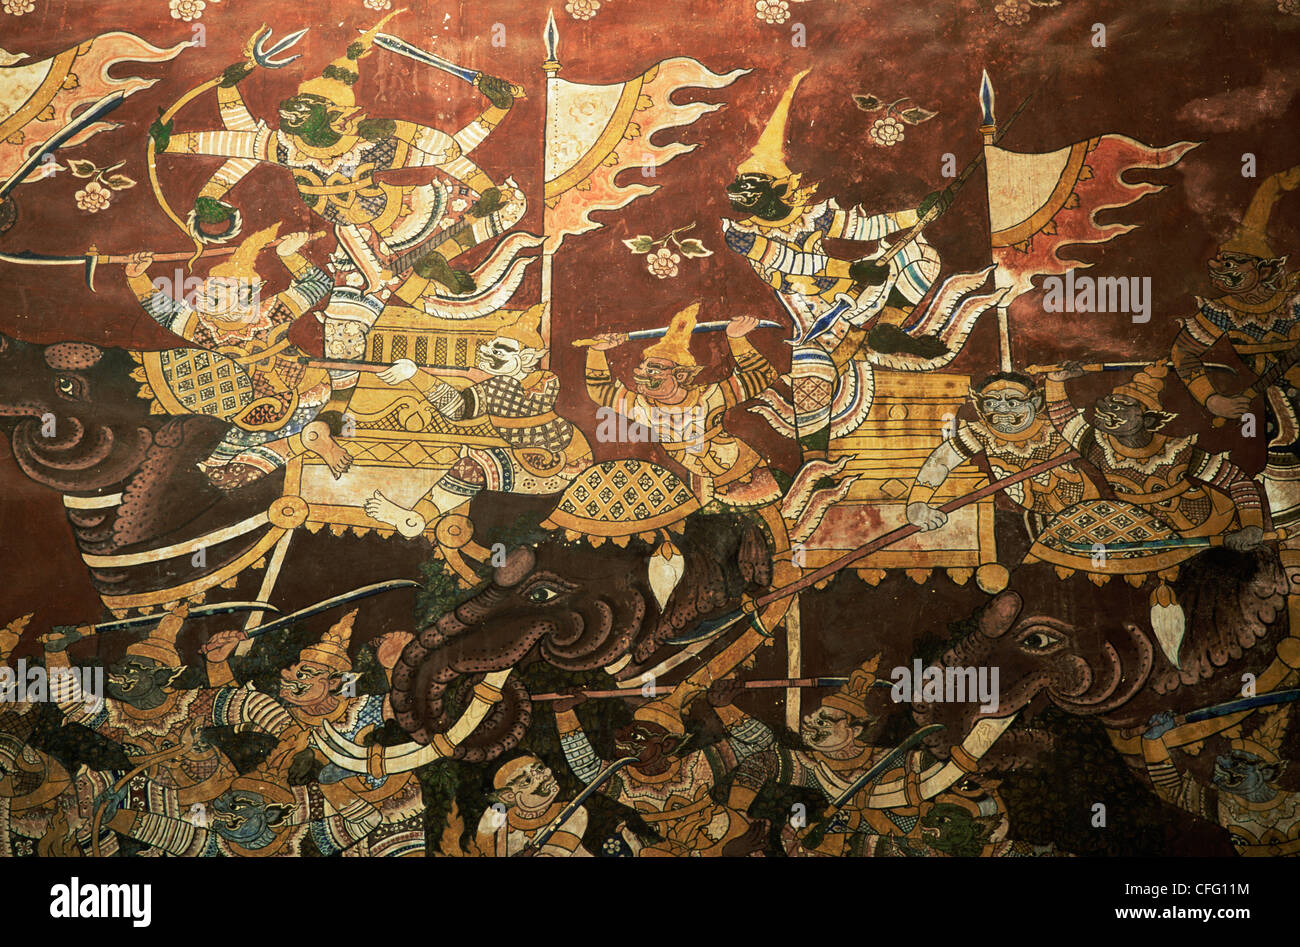 La Thaïlande, Phetchaburi, Wat Mahathat, mur des fresques murales représentant des scènes de bataille des éléphants de l'épique Ramakian Banque D'Images